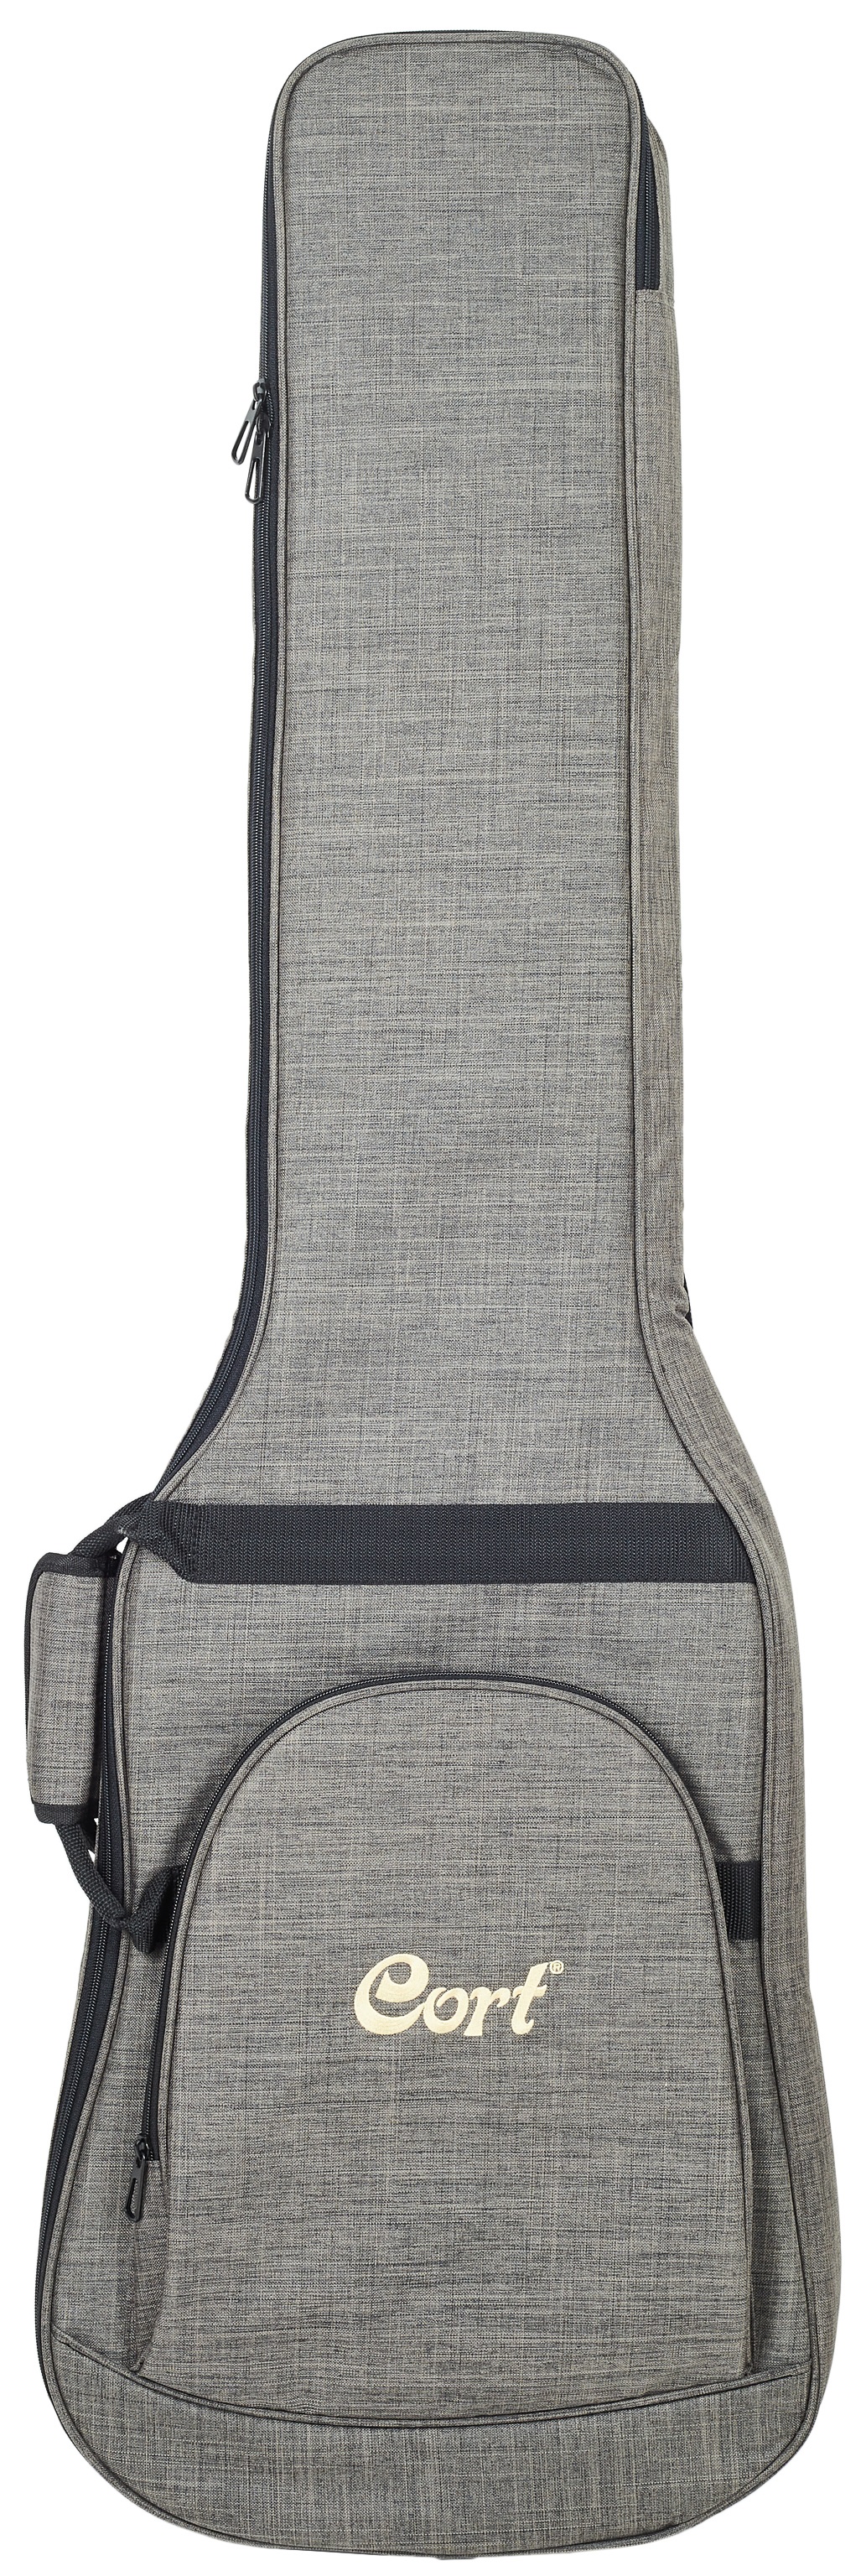 Fotografie Cort Premium Bass Guitar Bag